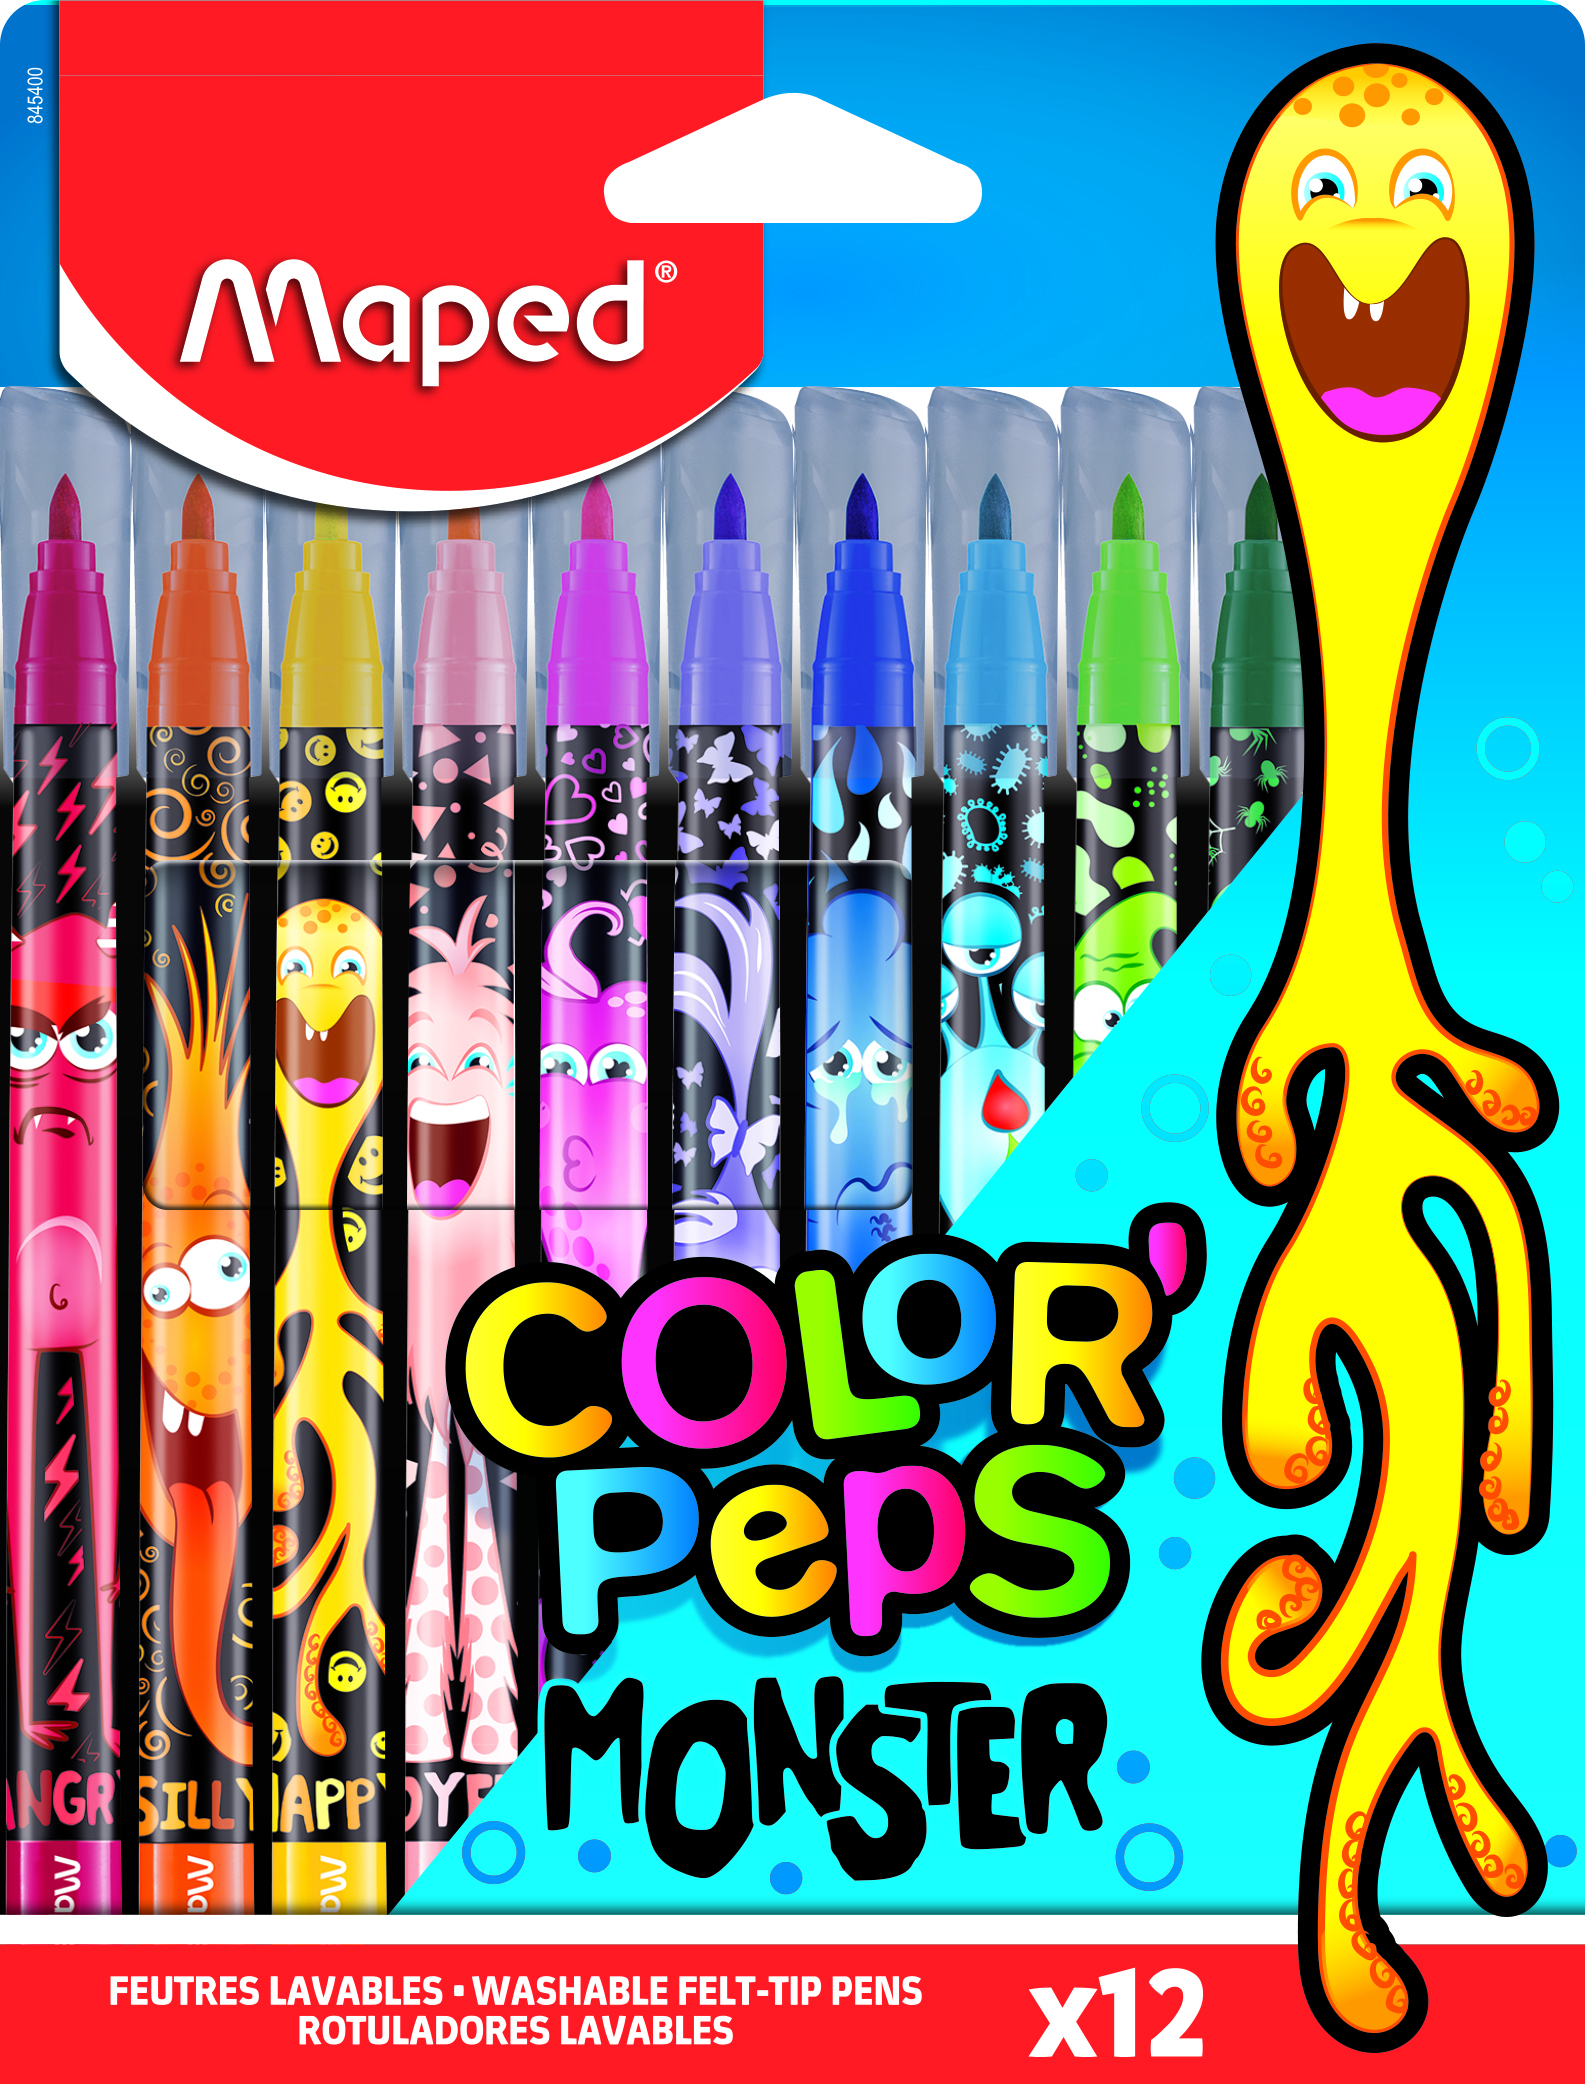 Feutres COLORPEPS Monster Boite De 12pcs Maped 845400